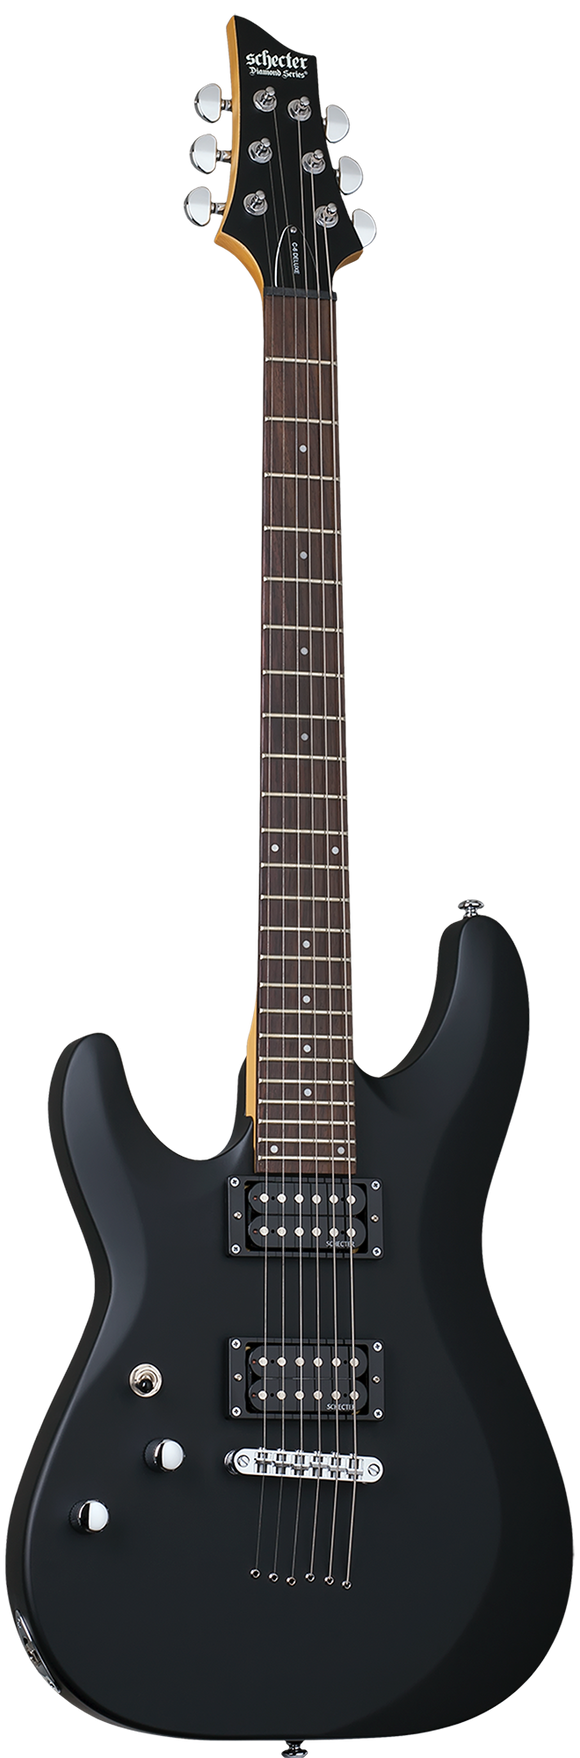 Schecter C-6 Deluxe Left Handed Electric Guitar - Satin Black